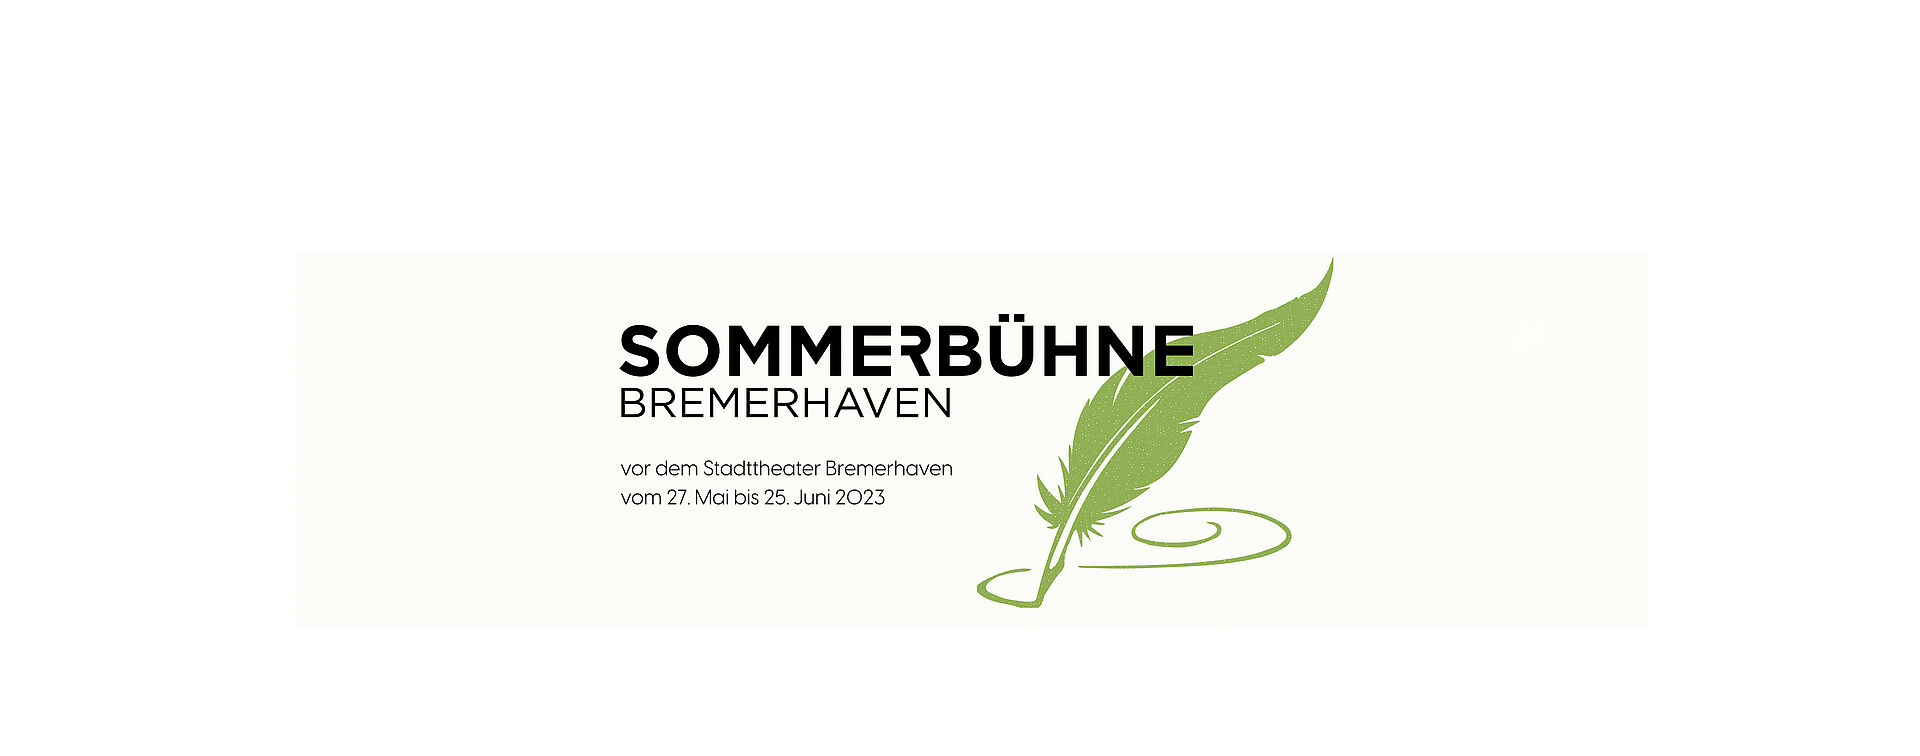 Logo Sommerbühne Bremerhaven. Schwarze Schrift auf weißem Grund: "vor dem Stadttheater Bremerhaven vom 27. Mai bis 25. Juni 2023". Grüne Schreibfeder.